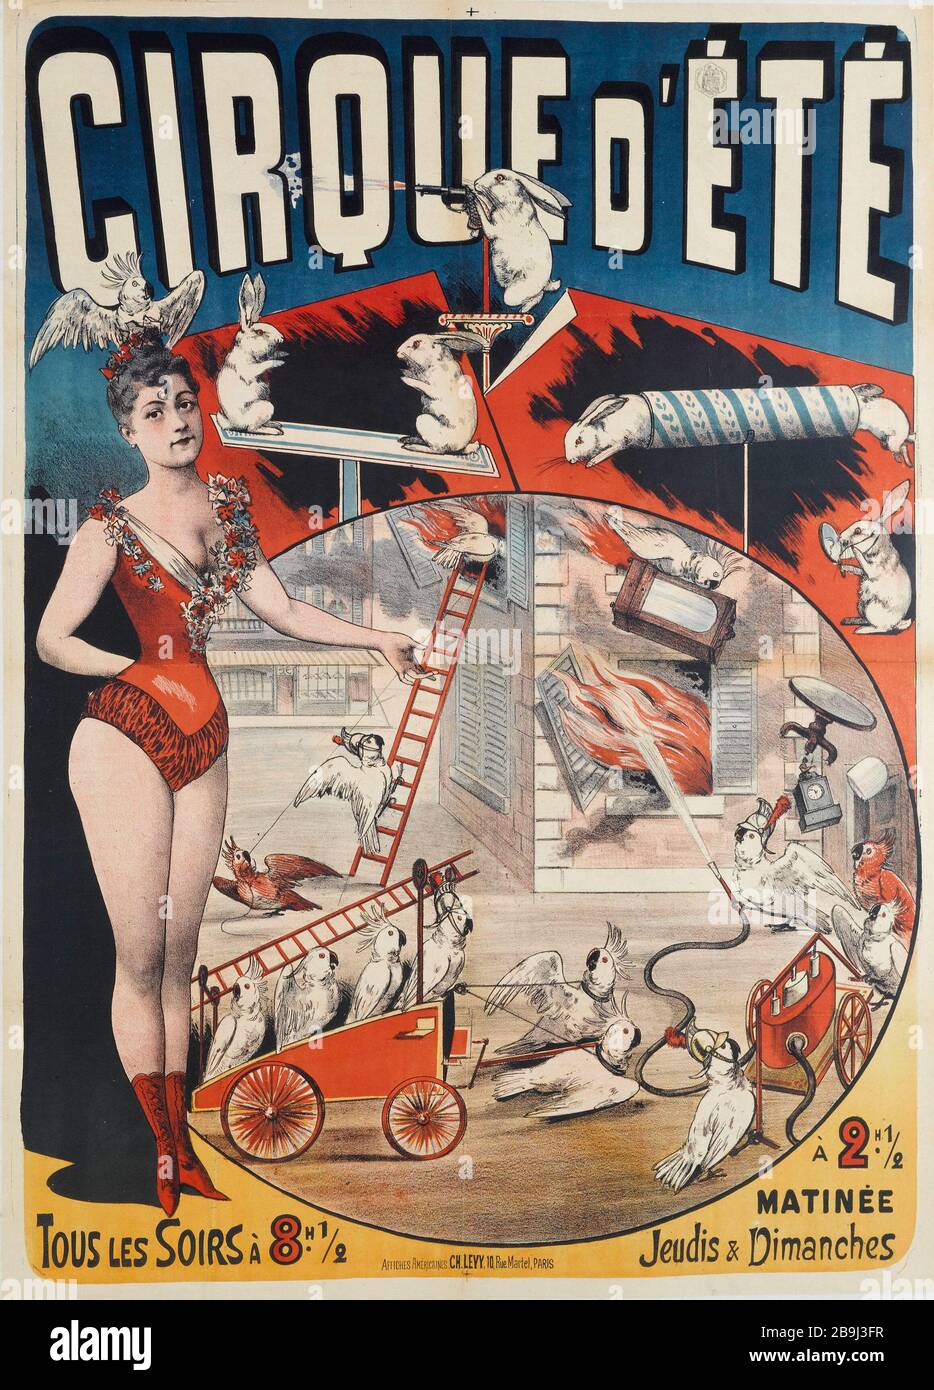 CIRCUS SUMMER, EVERY NIGHT Charles Lévy. Cirque d'Eté. Tous les Soirs. Affiche. Lithographie couleur,  1890. Paris, musée Carnavalet. Stock Photo